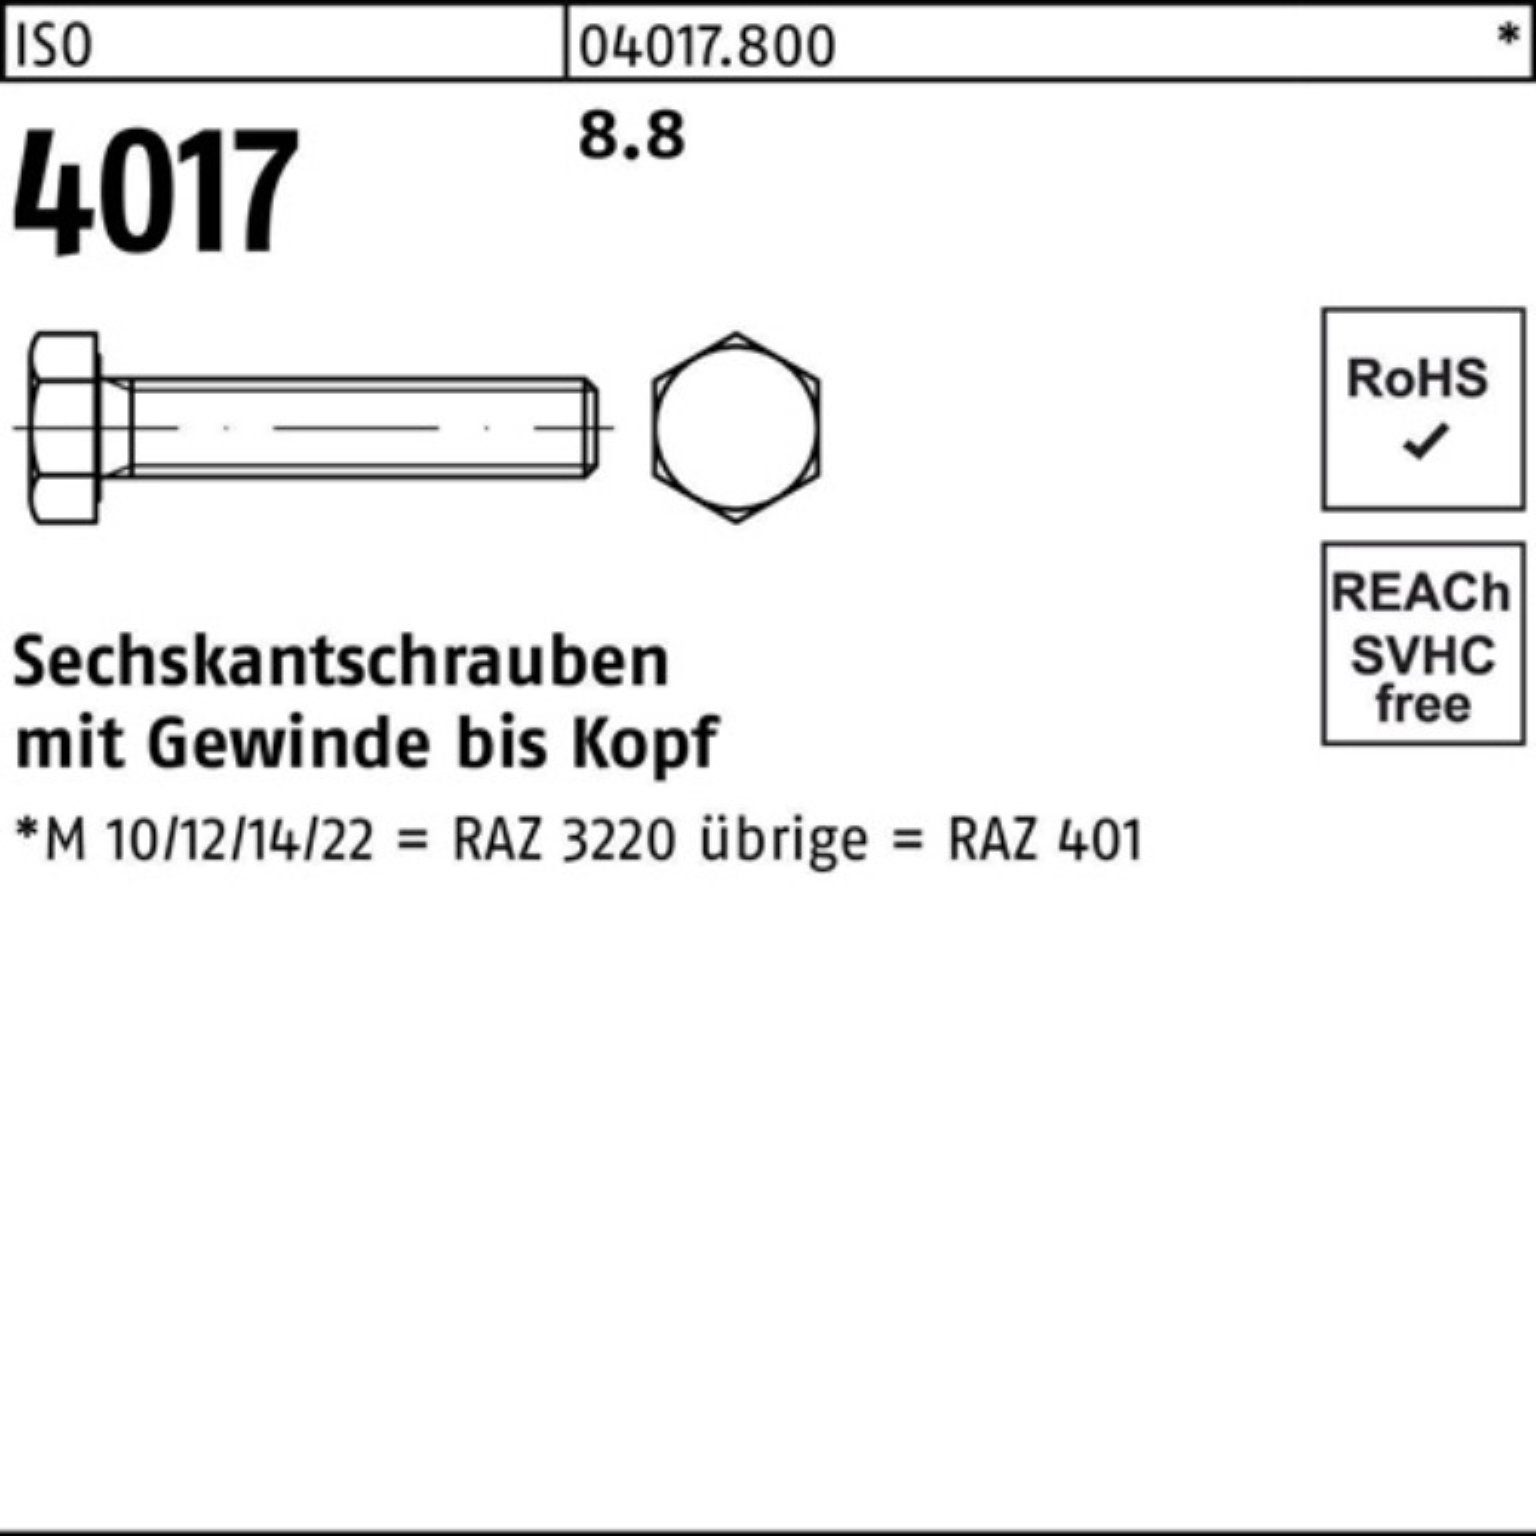 Bufab Sechskantschraube 10 70 Stück 4017 ISO ISO 8.8 401 Pack Sechskantschraube VG M27x 100er